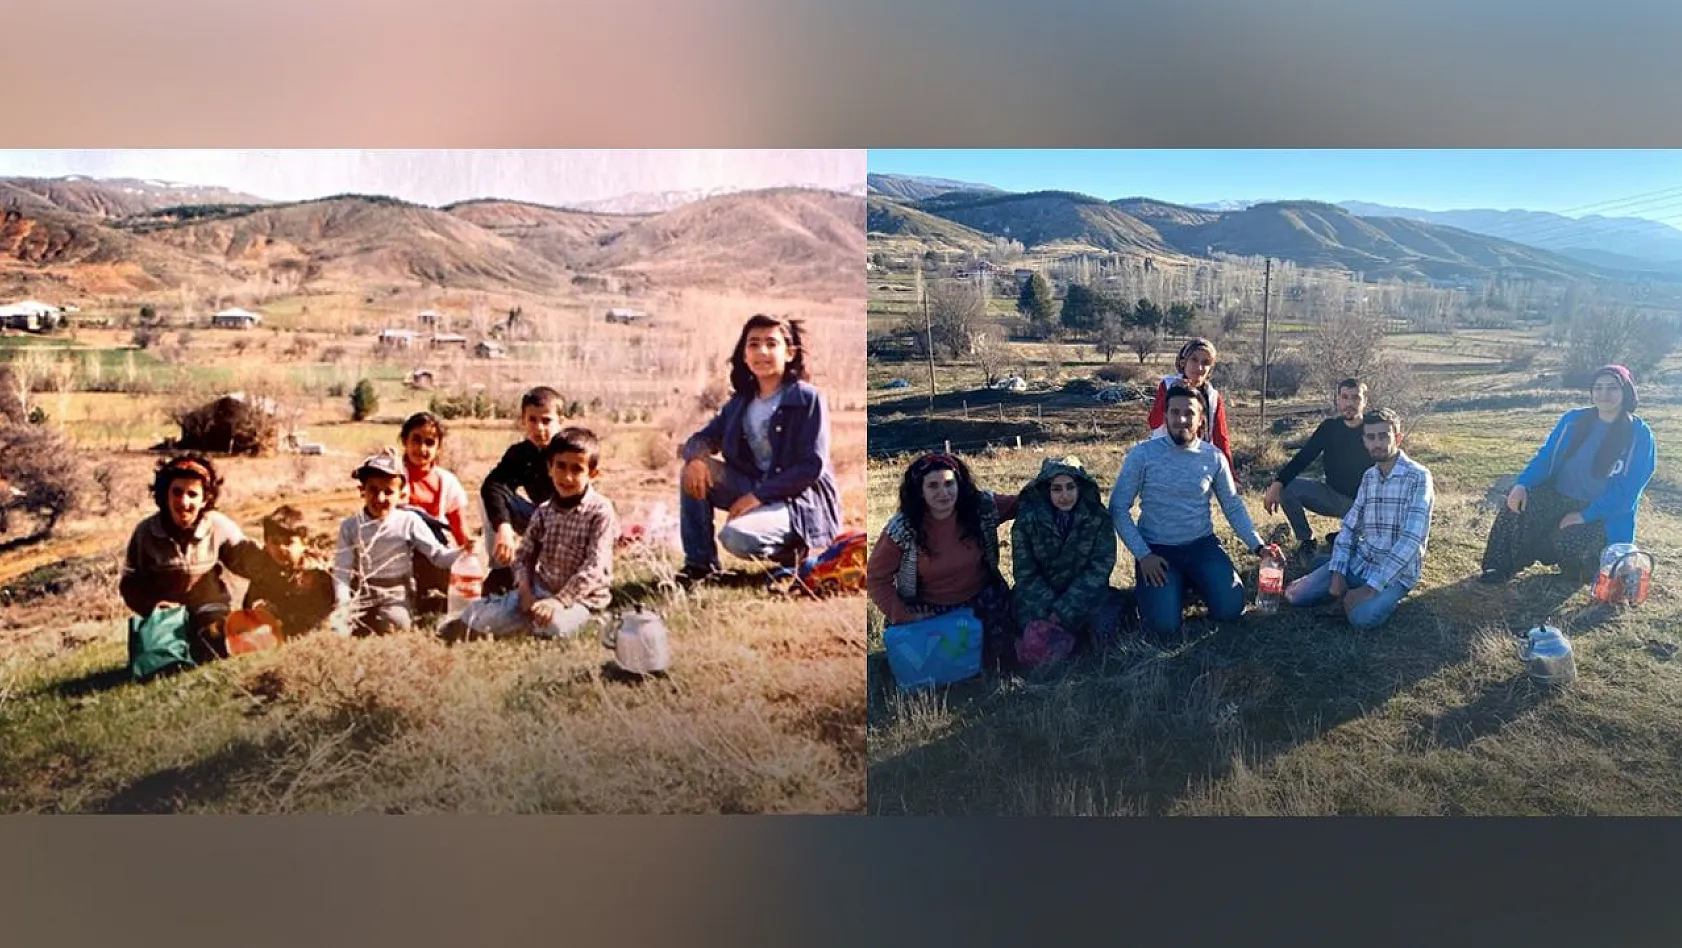 Yer aynı, arkadaşlar aynı, tarih farklı: Elazığ'da 7 çocukluk arkadaşı, 18 yıl sonra aynı yerde buluşup ayını fotoğrafı çektirdi